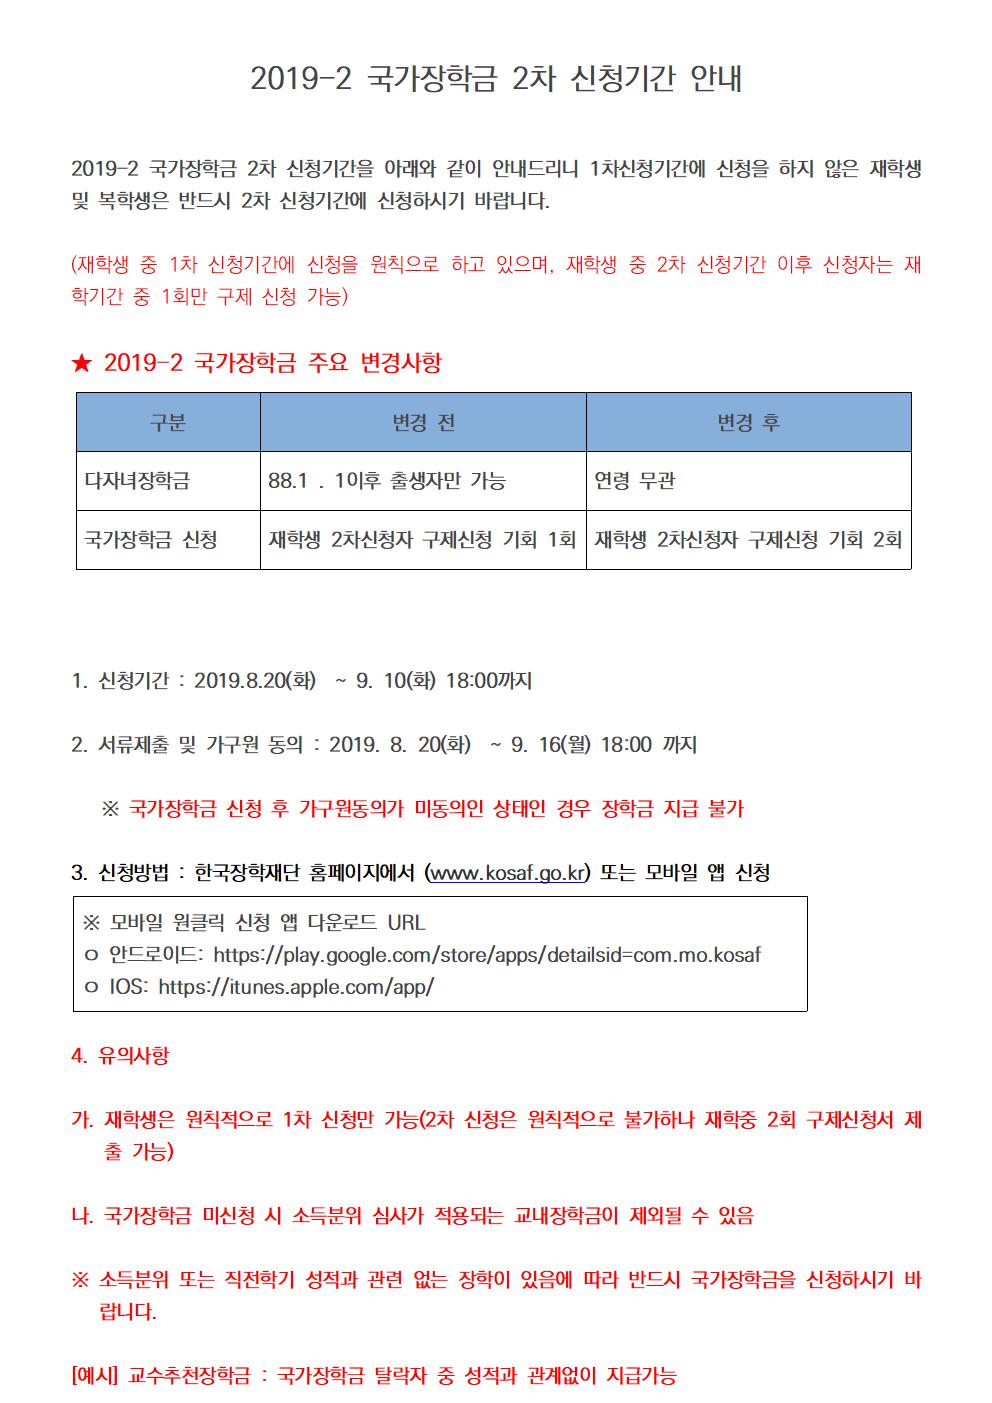 [중요]2019-2 국가장학금 2차 신청기간 안내